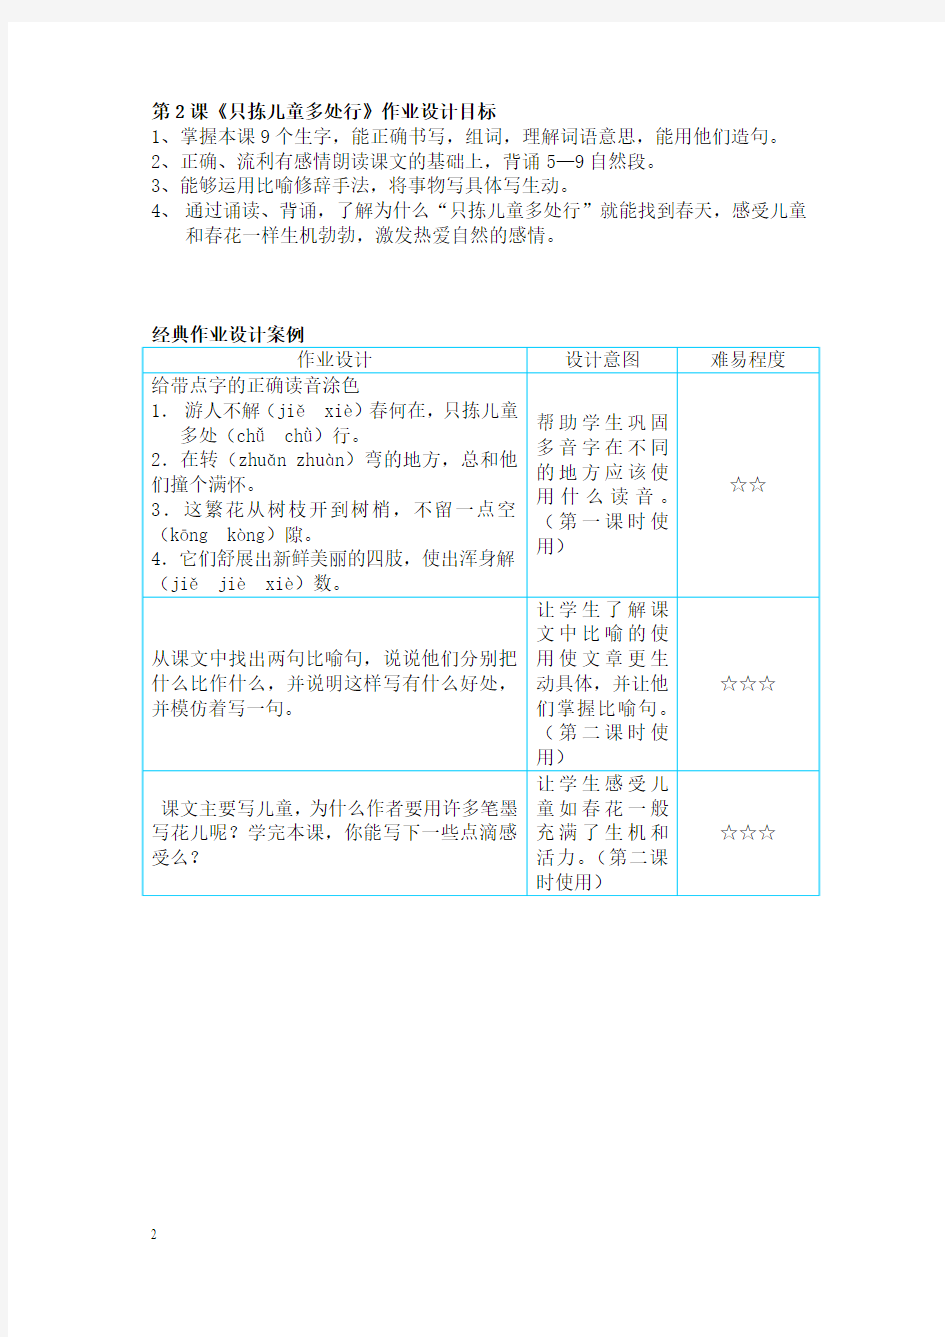 苏教版国标本小学语文五年级下册作业设计